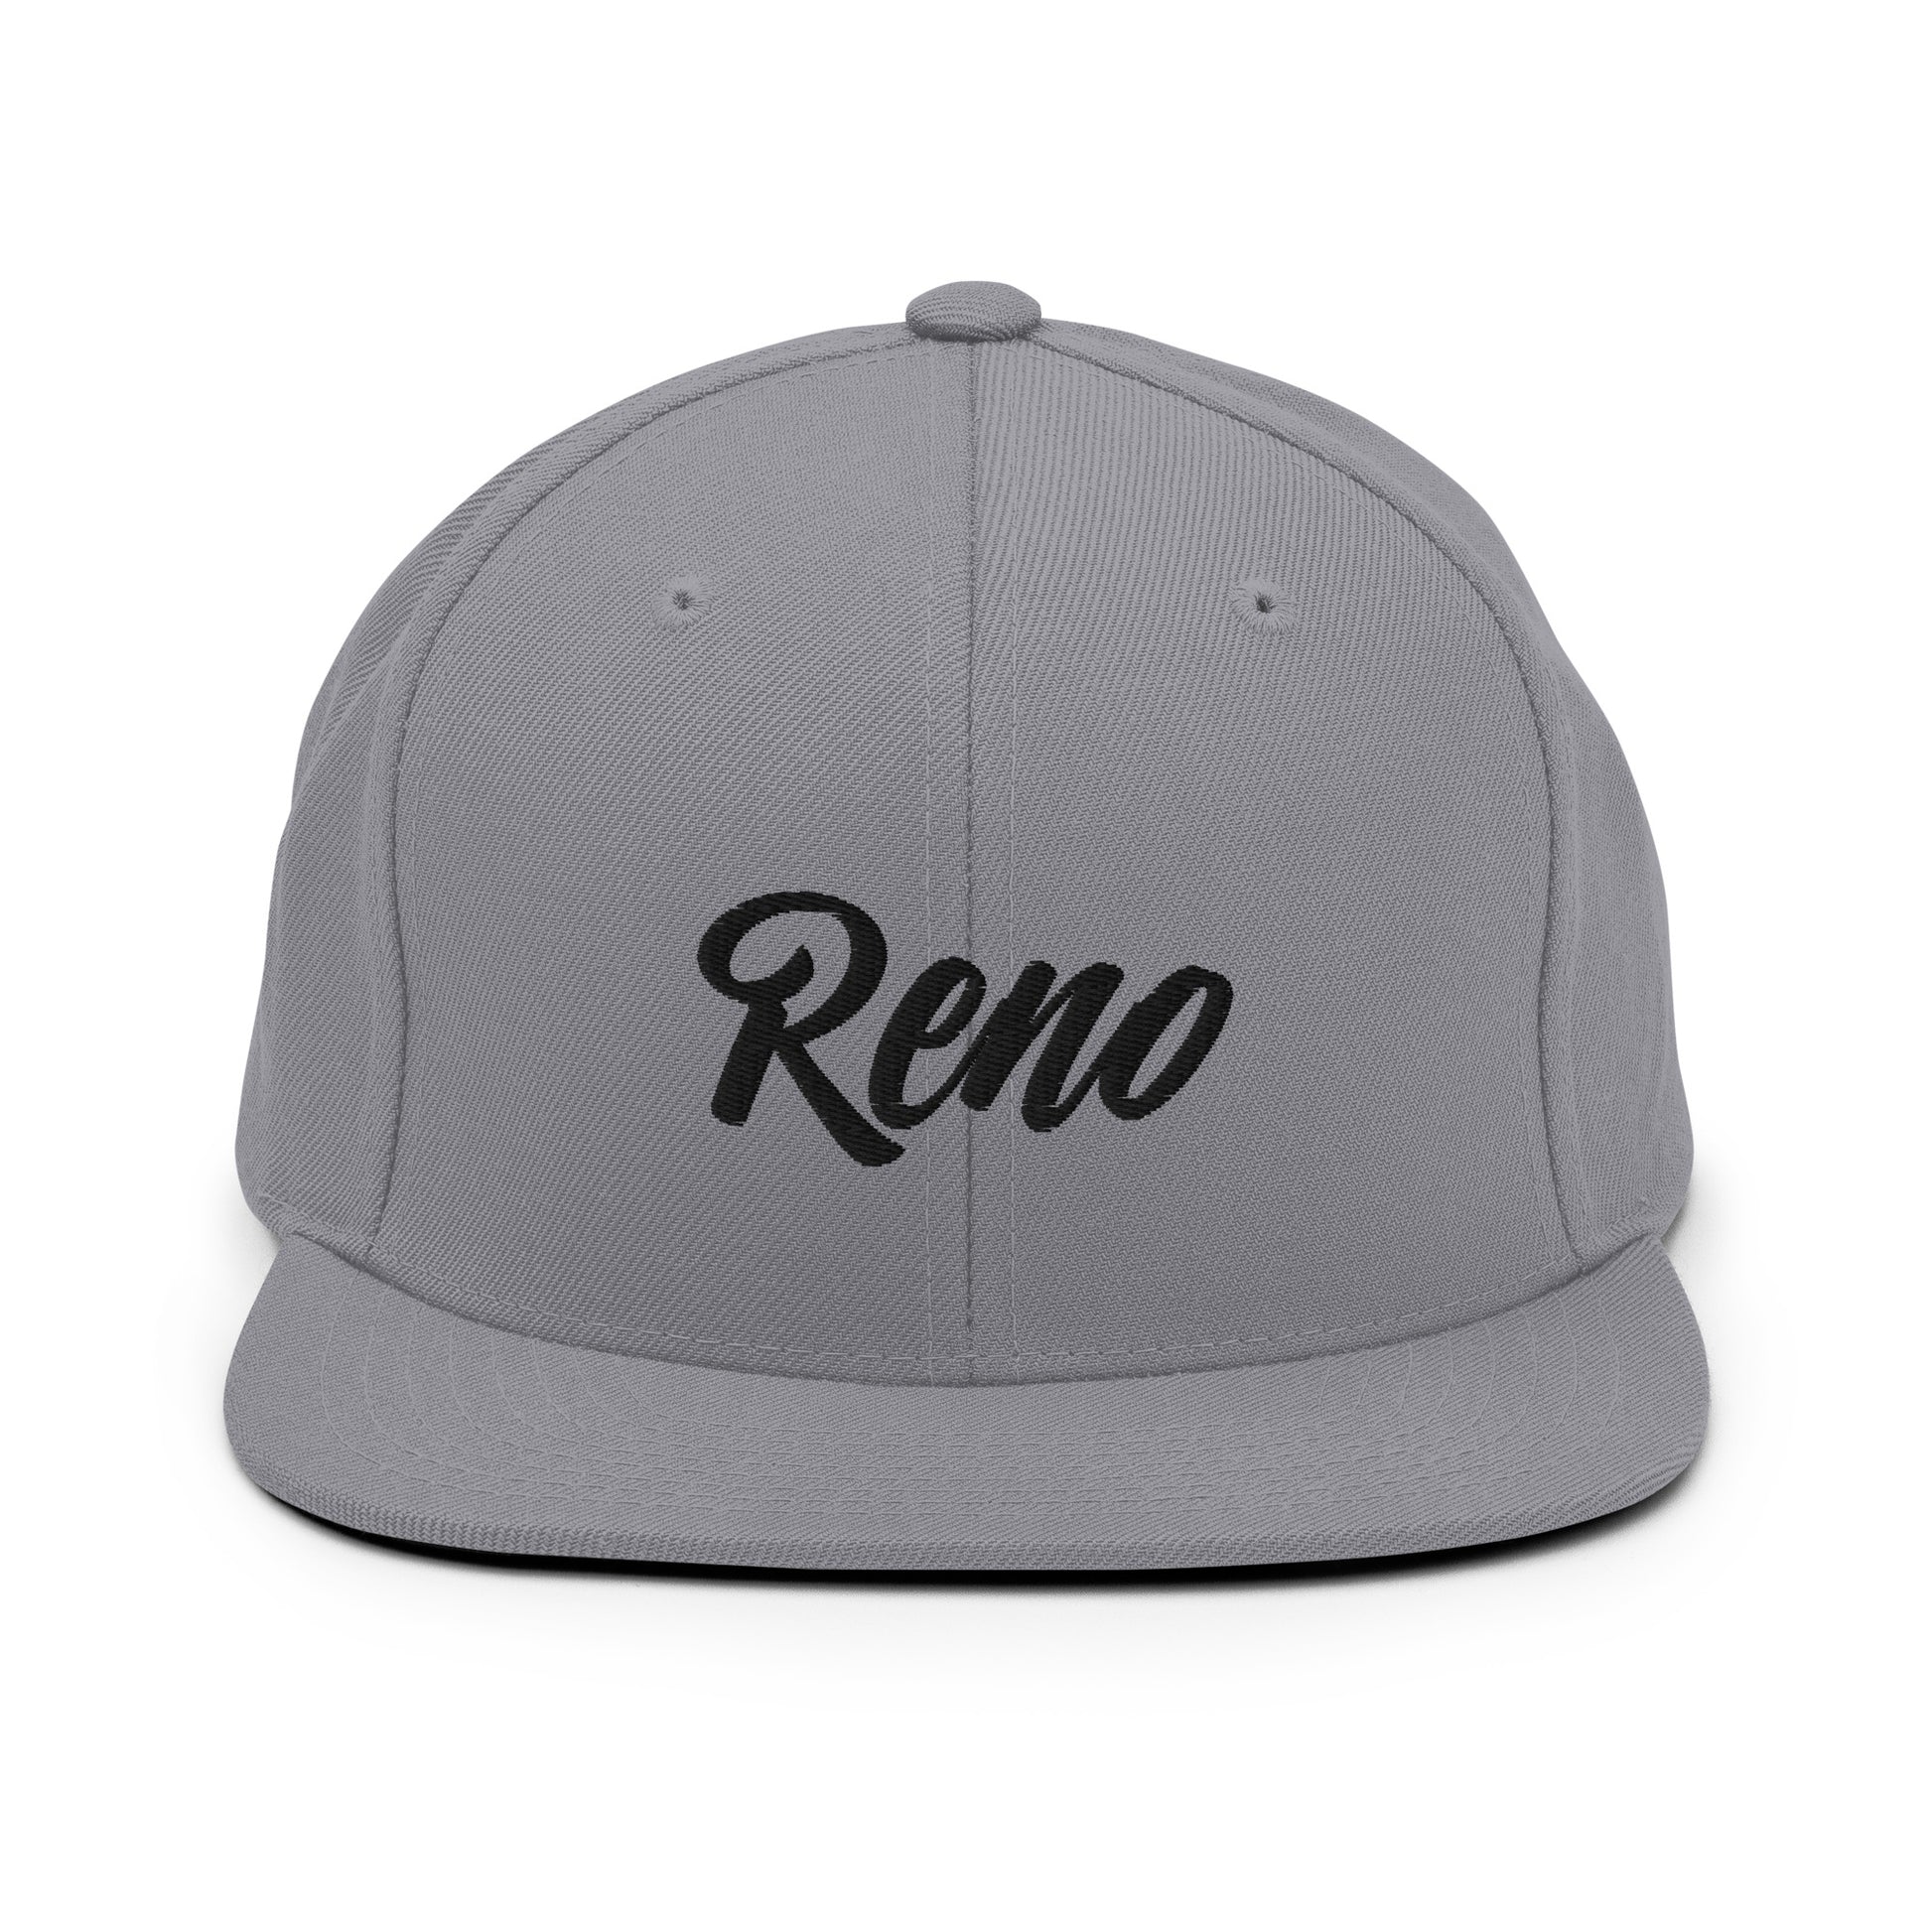 Reno Snapback Hat No2